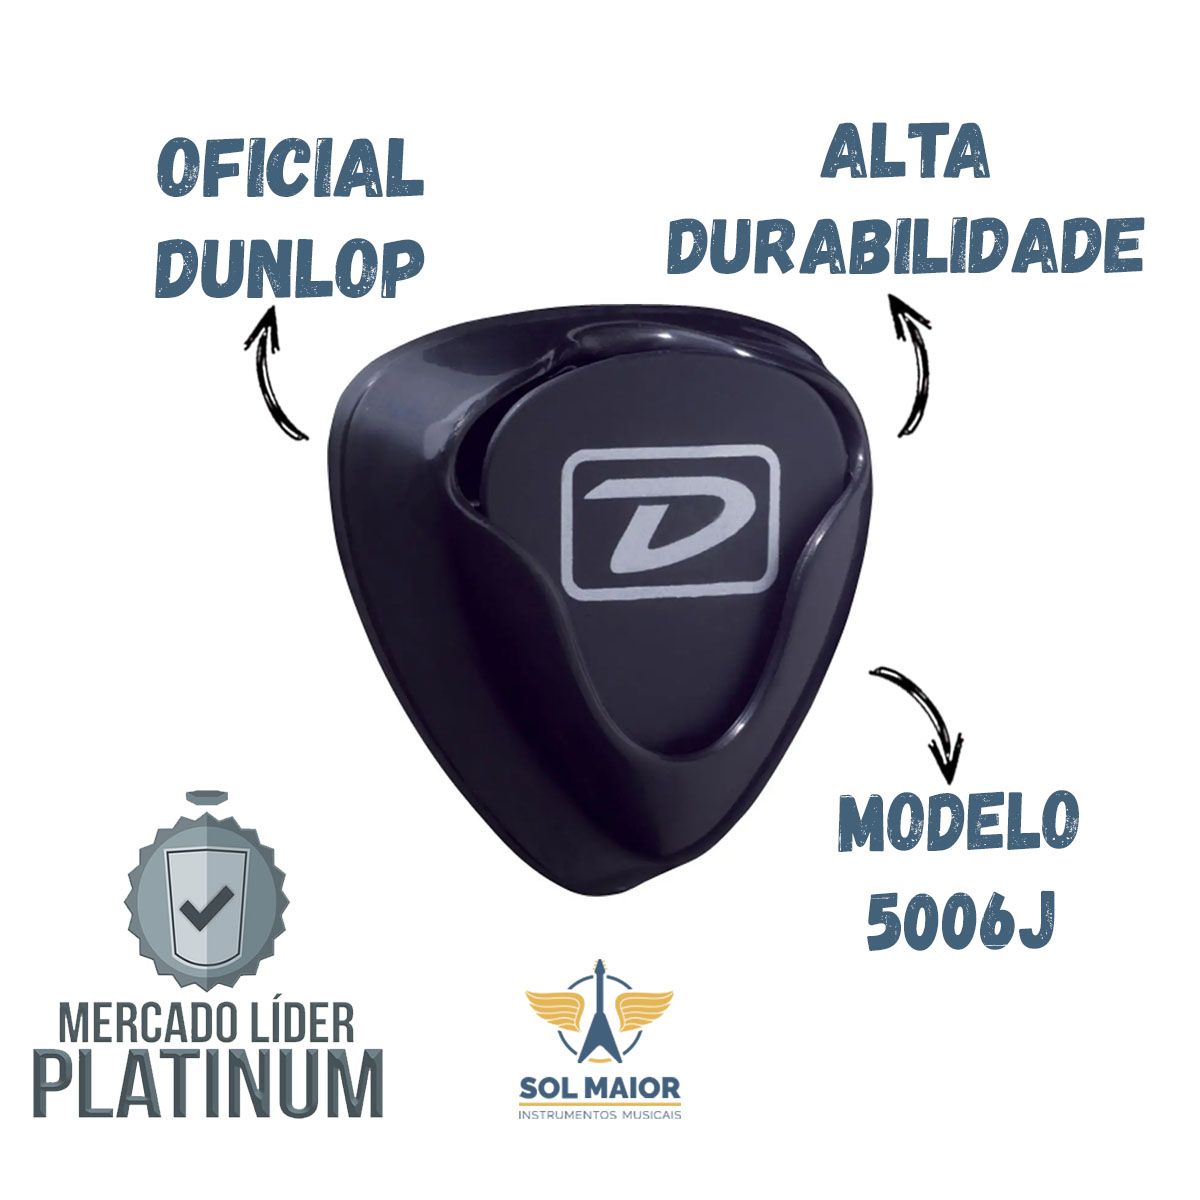 Porta Palheta Guitarra Violão Adesivo Ergo Dunlop 5006J - Grupo Solmaior